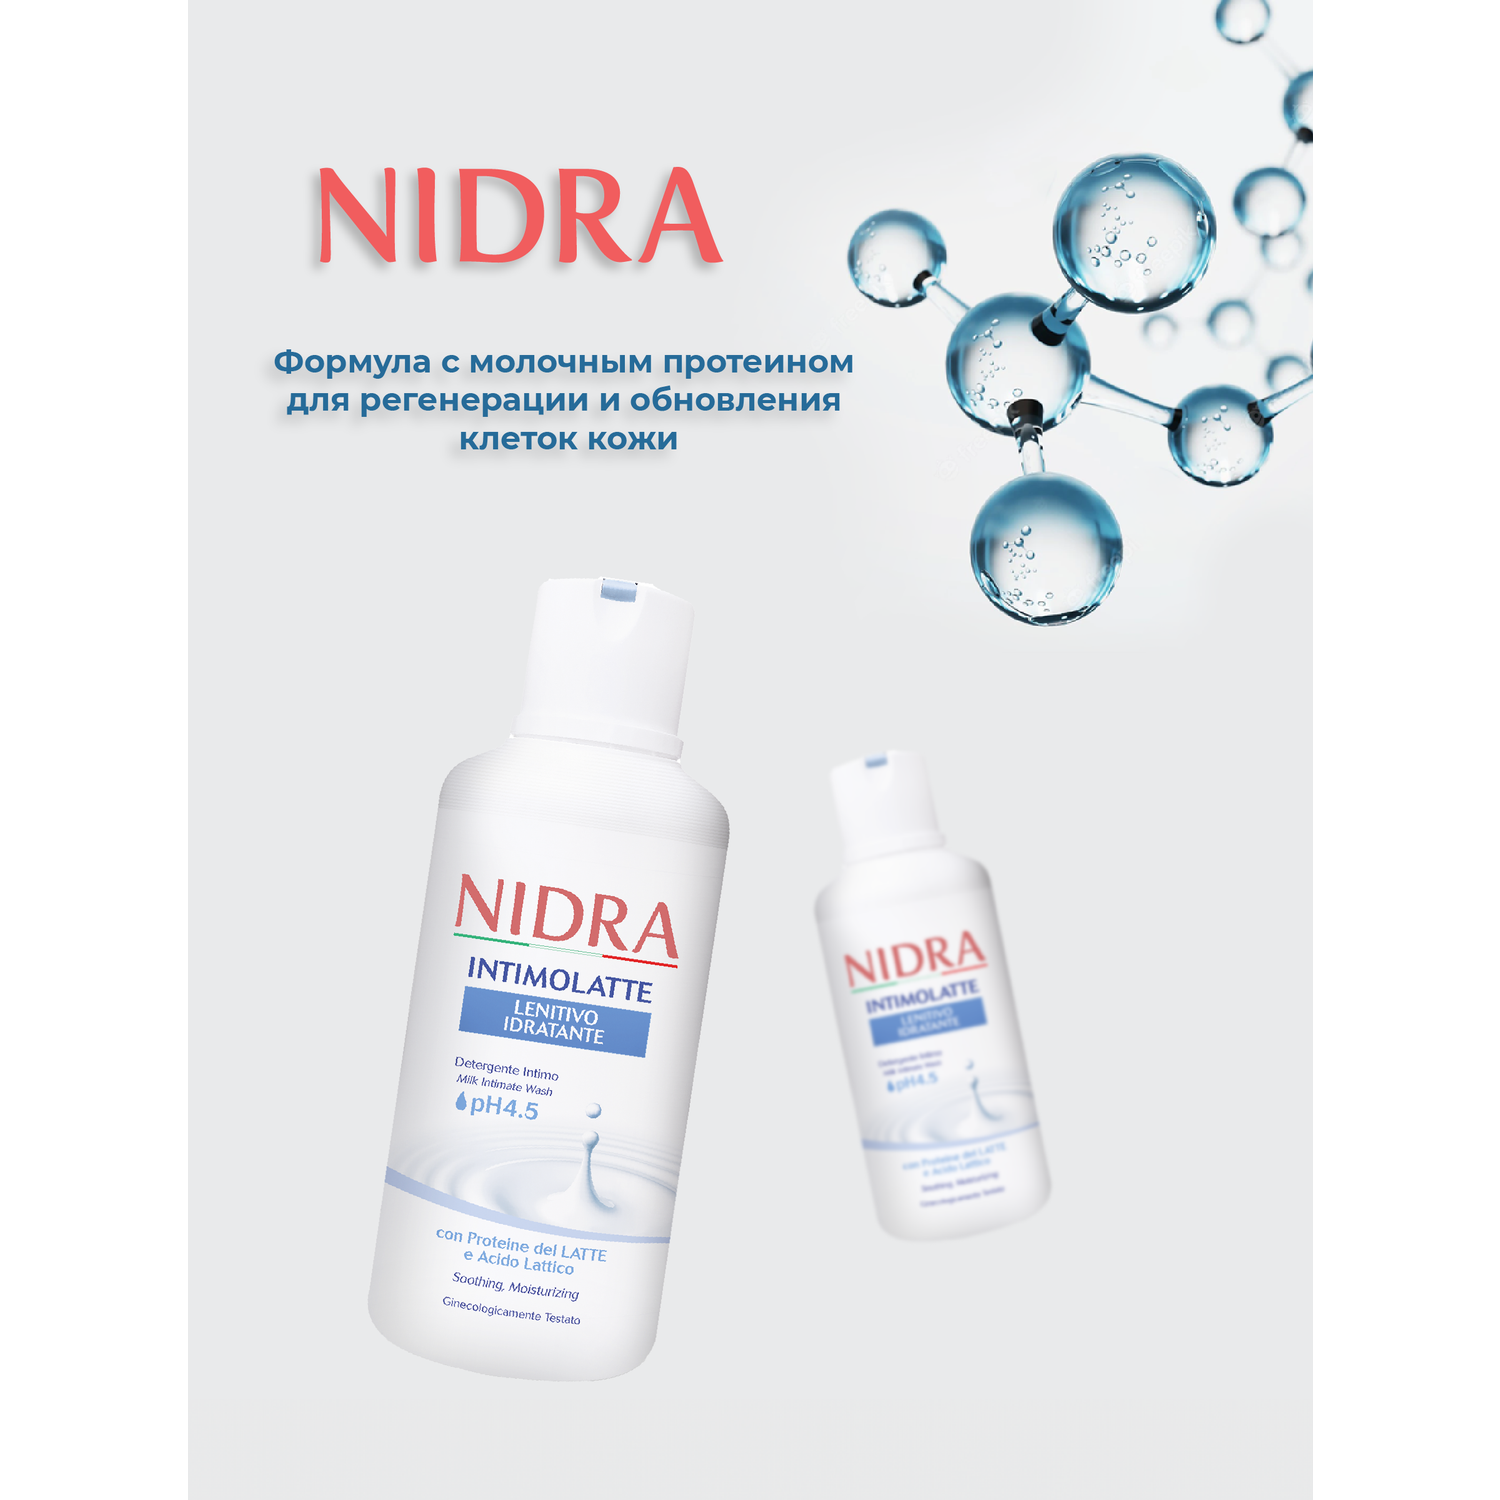 Гель для интимной гигиены Nidra увлажняющий с молочными протеинами 2 шт - фото 3